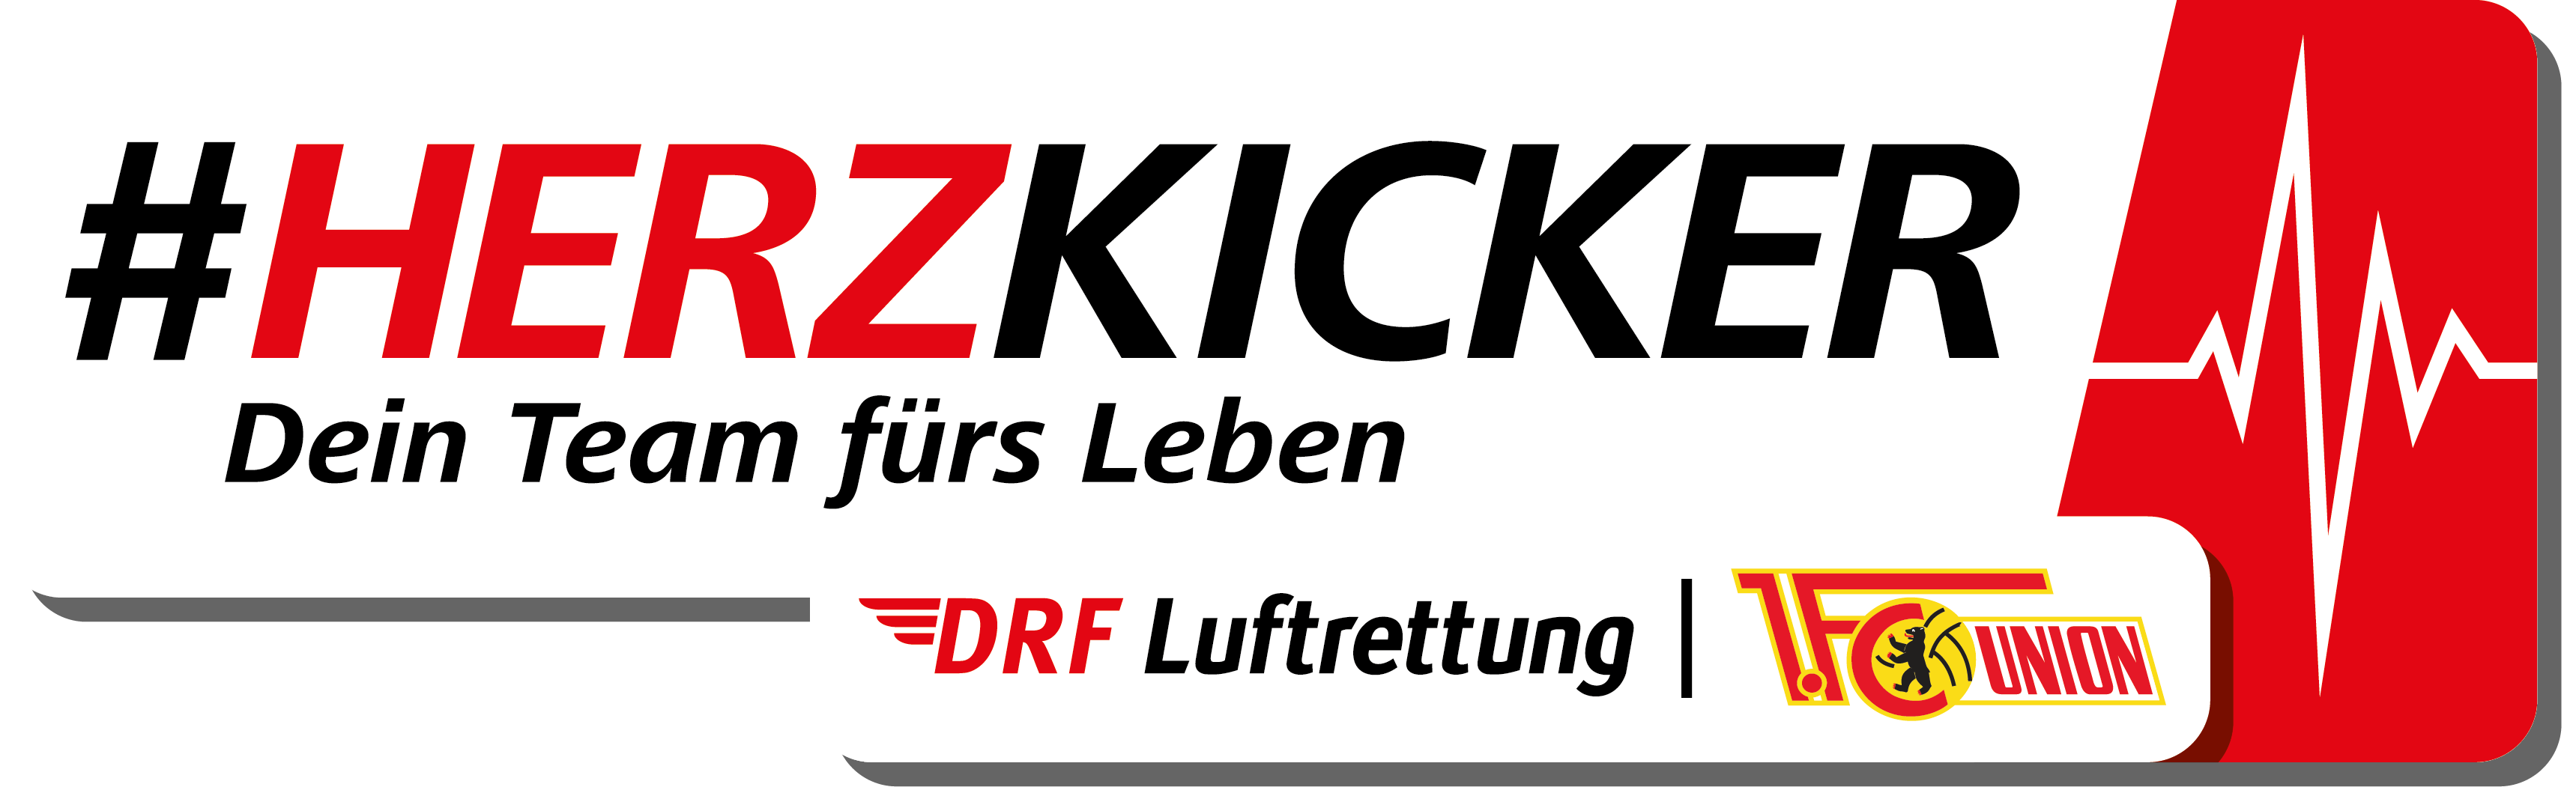 DRF_LUFTRETTUNG_Herzkicker_Visual_mit_DRF_Final